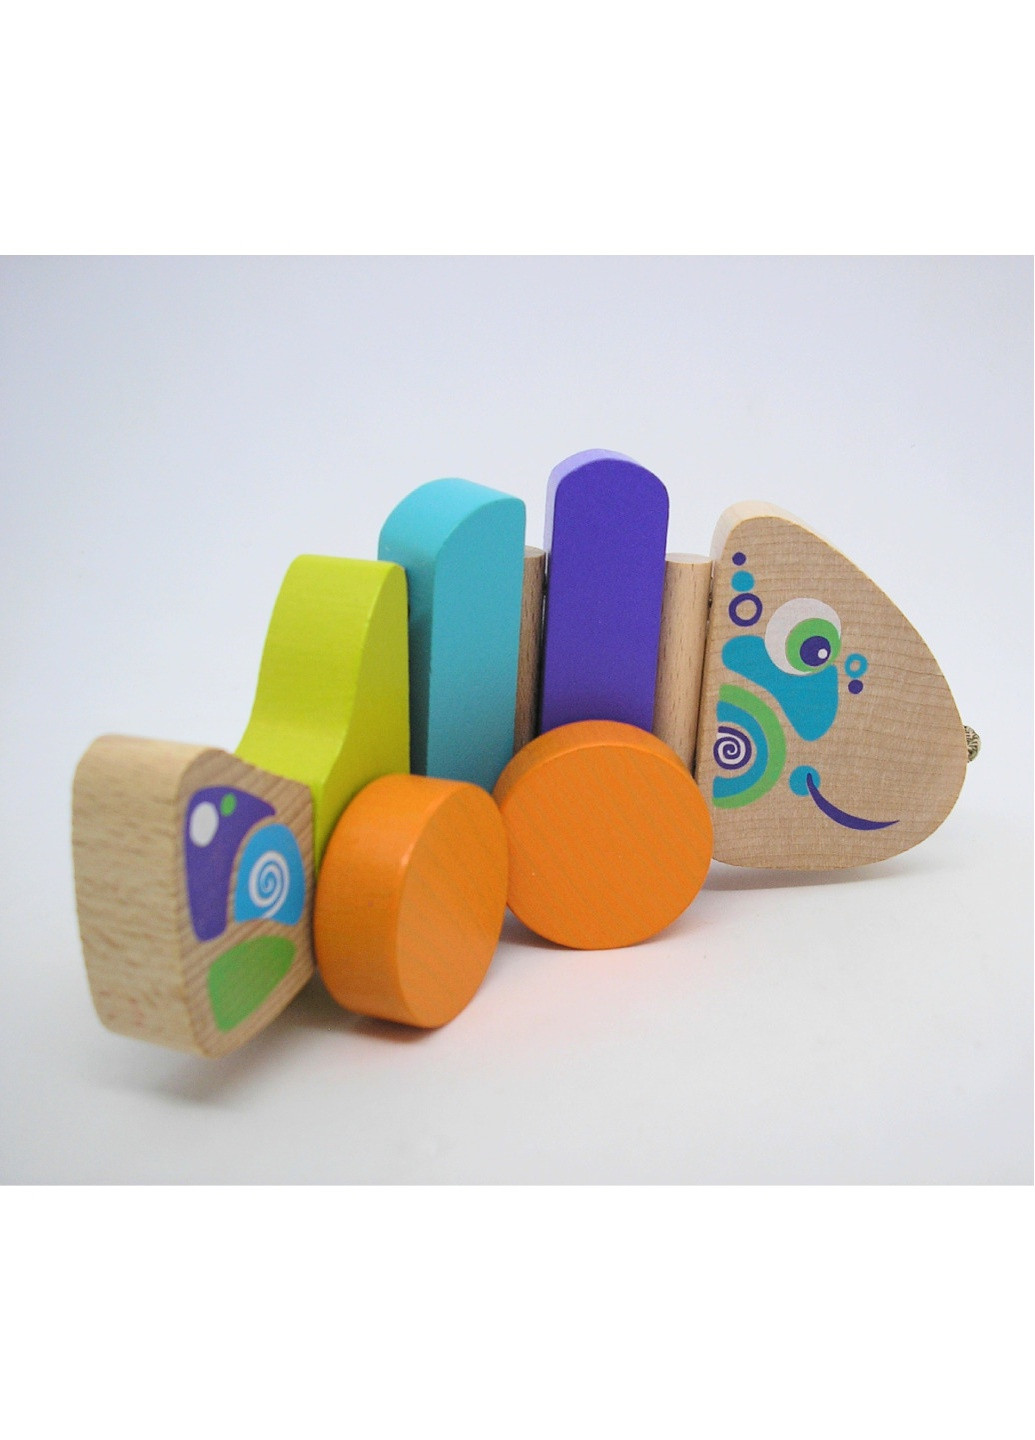 Каталка рыбка на шнурочке игрушка деревянная детская разноцветная развивающая Cubika (259793920)